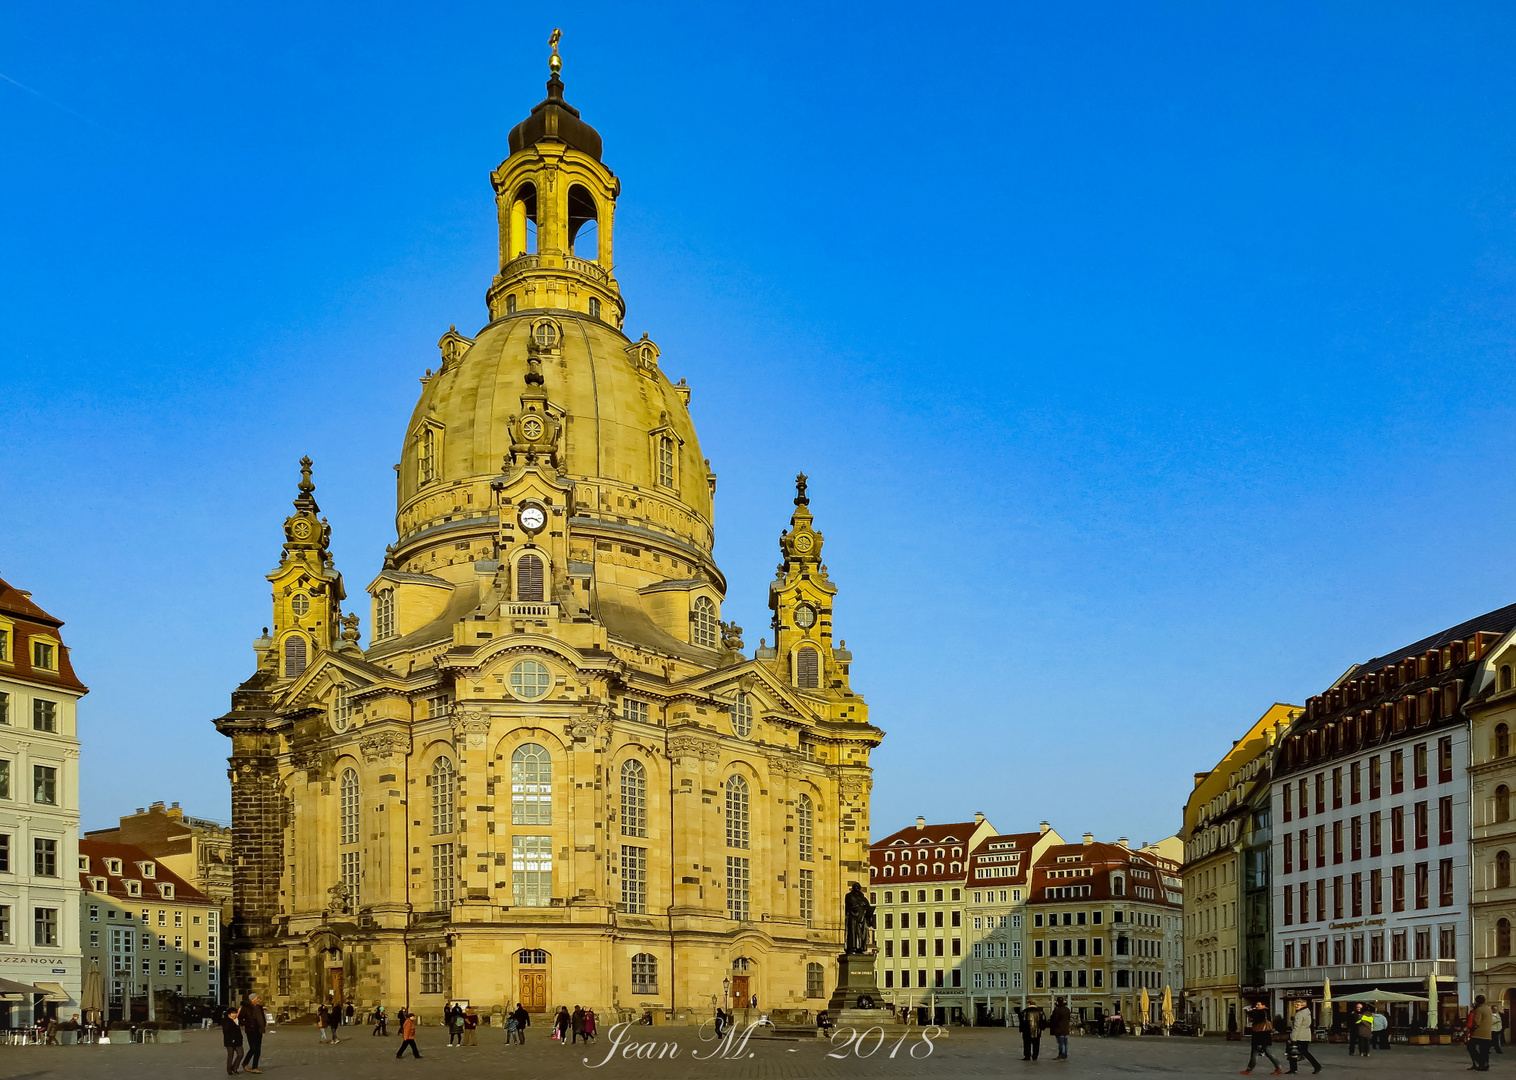 Dresdens Dicke im Sonnenlicht.